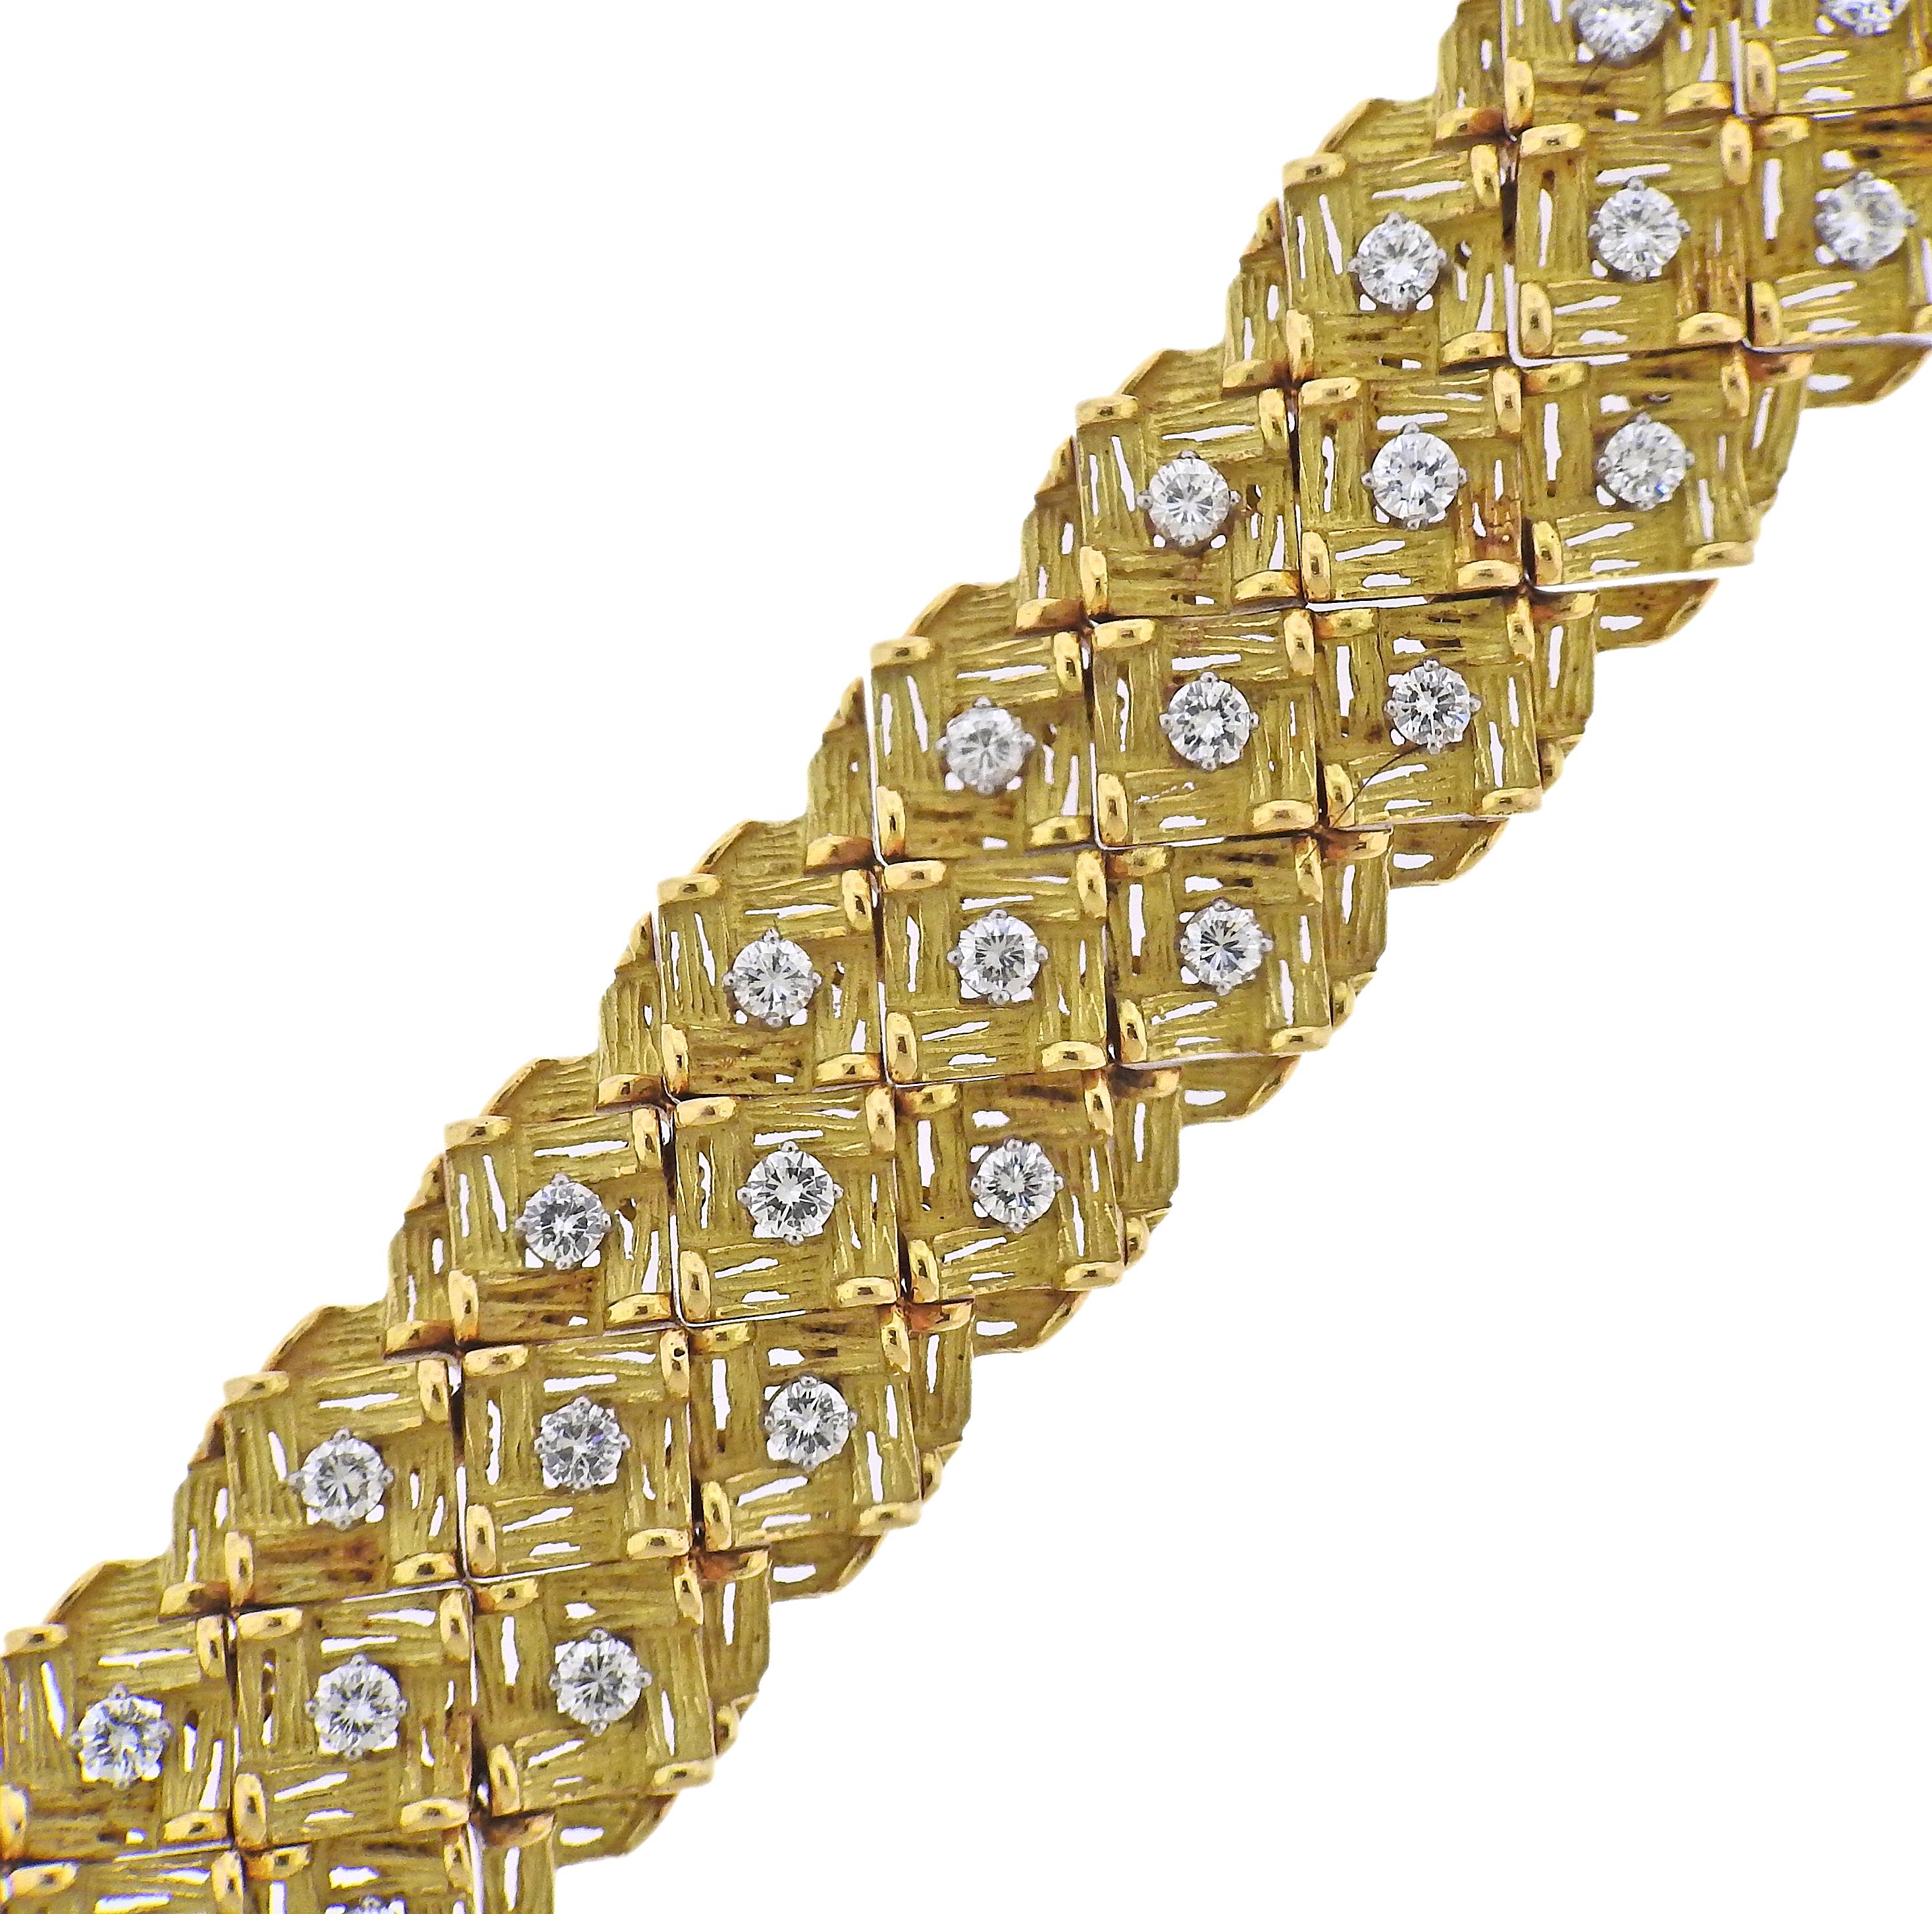 Bracelet en or 18k de fabrication française datant des années 1960, serti d'environ 6-6,50ctw de diamants H/Si1. Le bracelet mesure 7,25